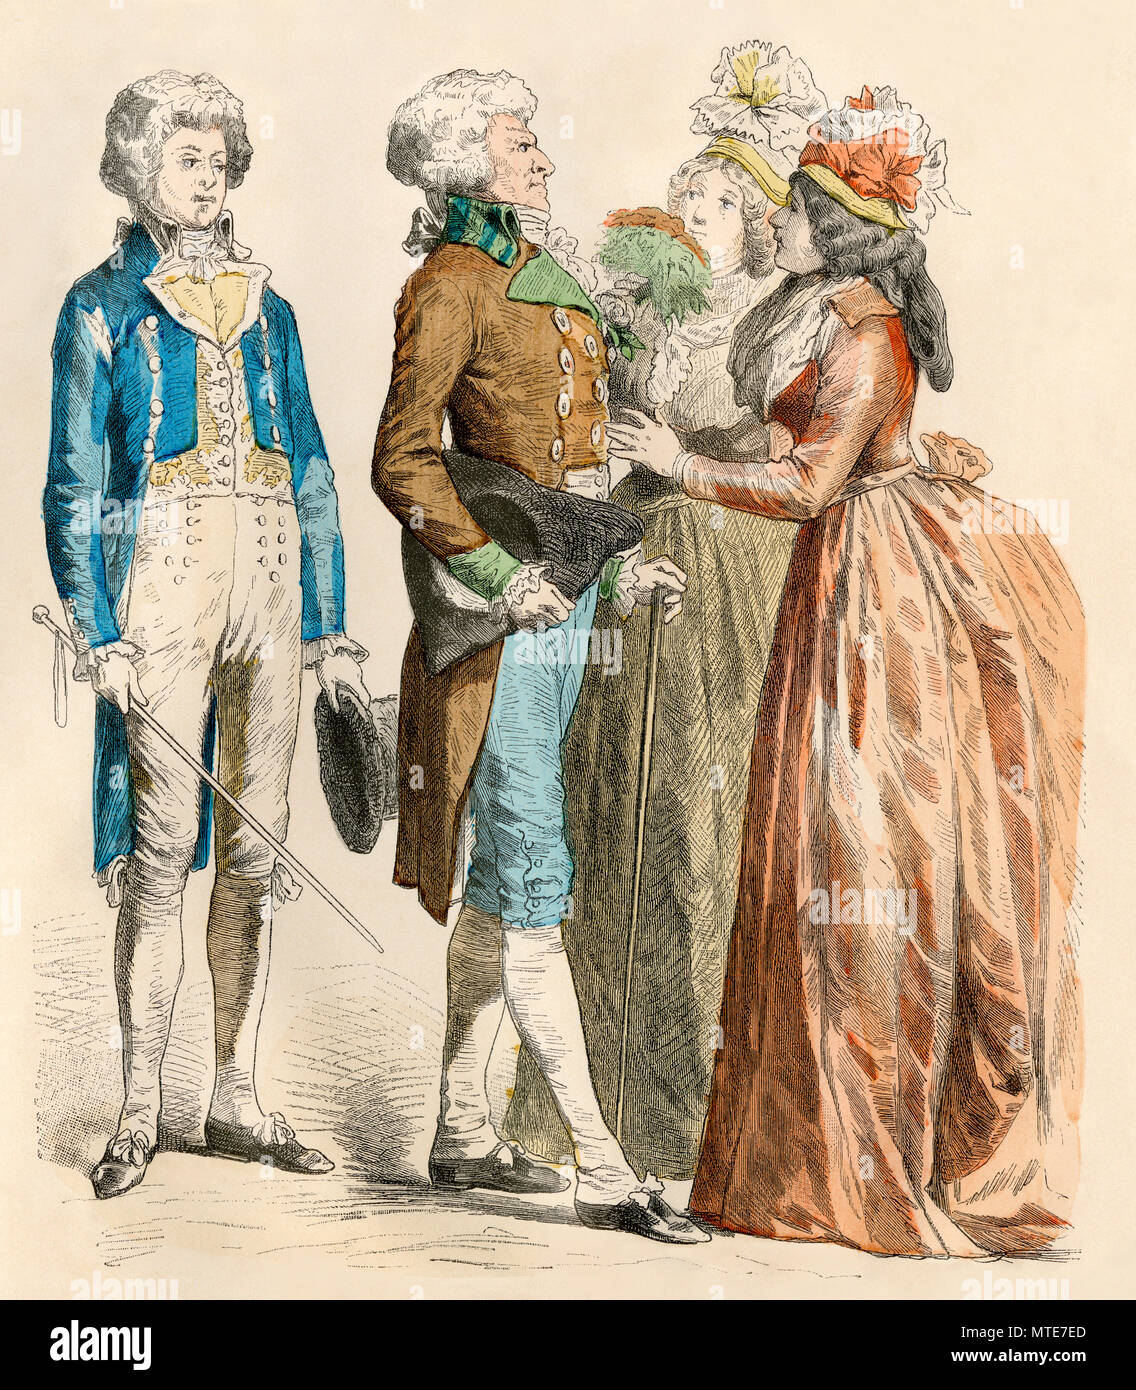 Los parisinos de la década de 1790, período de la Revolución Francesa. Mano de color imprimir Foto de stock